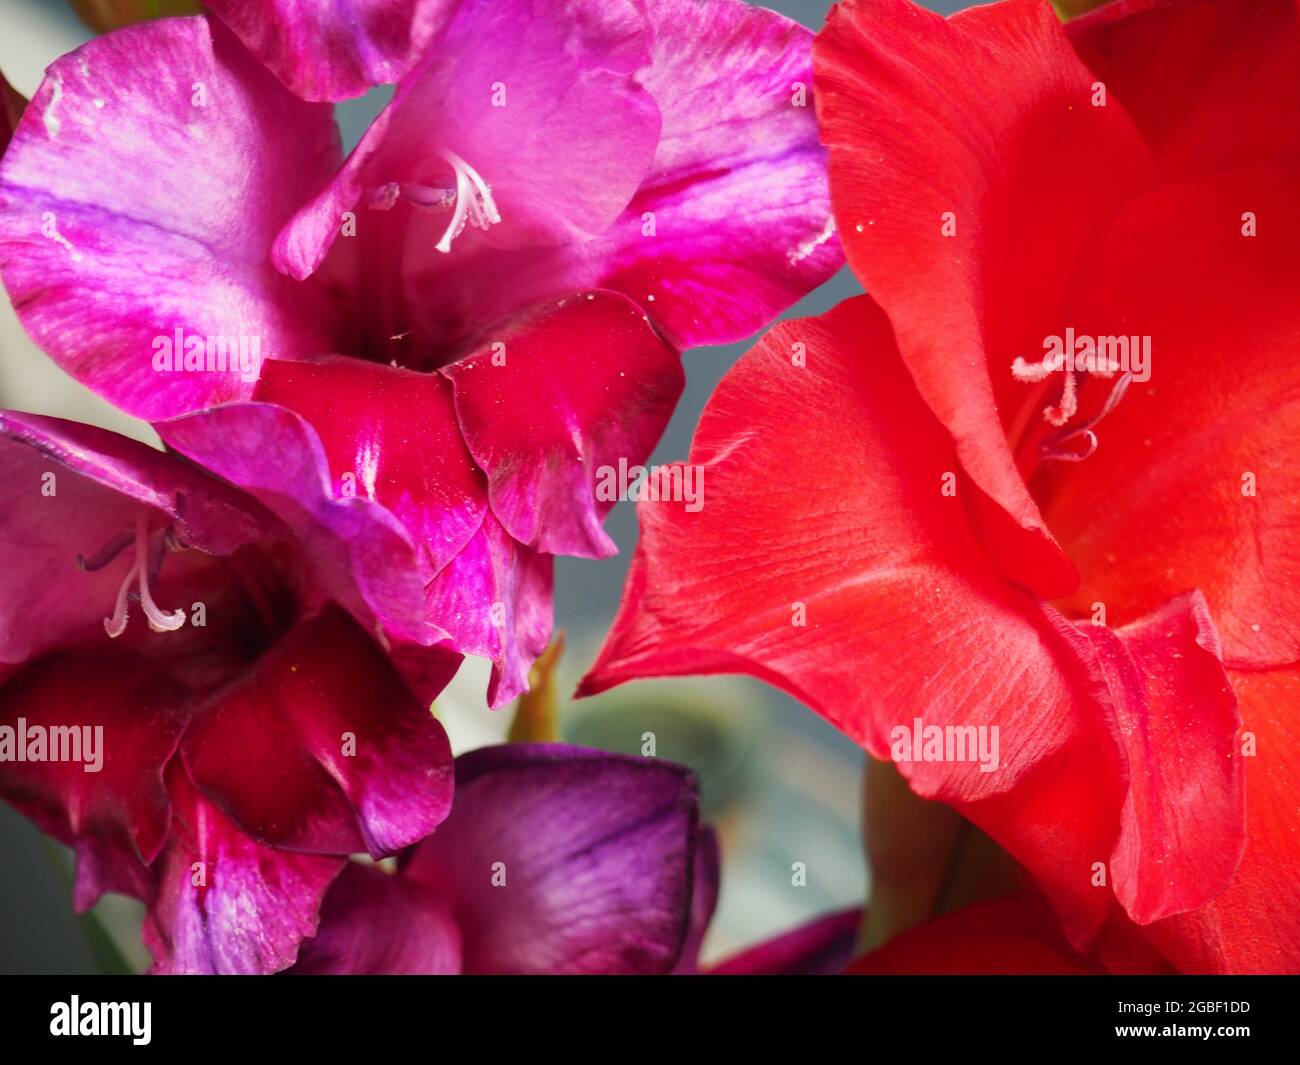 Primer plano de las flores de gladiolo púrpura y rojo Foto de stock